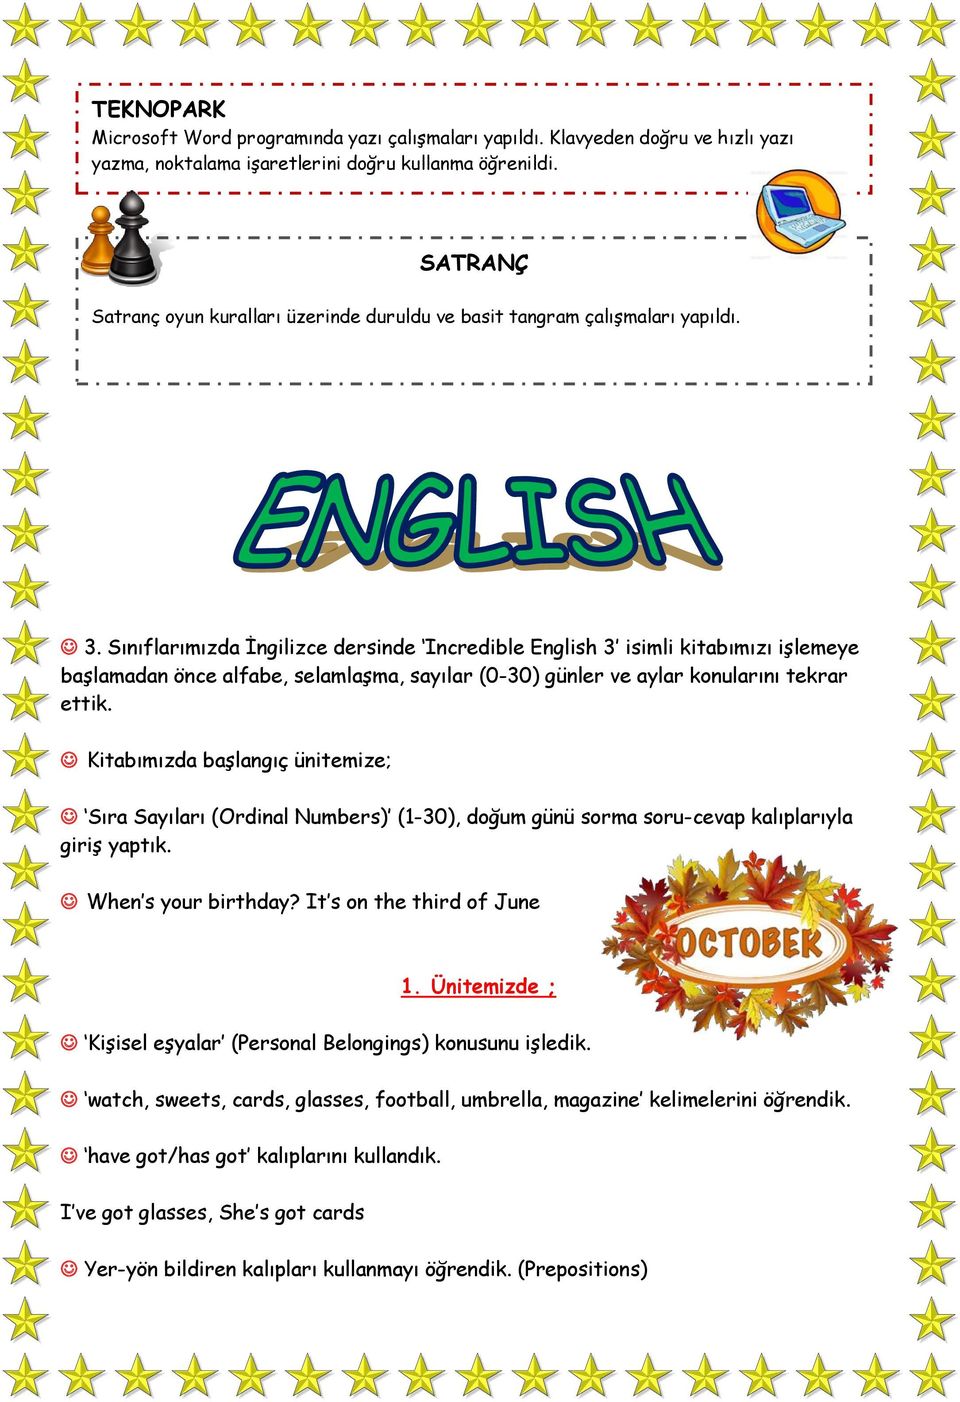 Sınıflarımızda İngilizce dersinde Incredible English 3 isimli kitabımızı işlemeye başlamadan önce alfabe, selamlaşma, sayılar (0-30) günler ve aylar konularını tekrar ettik.